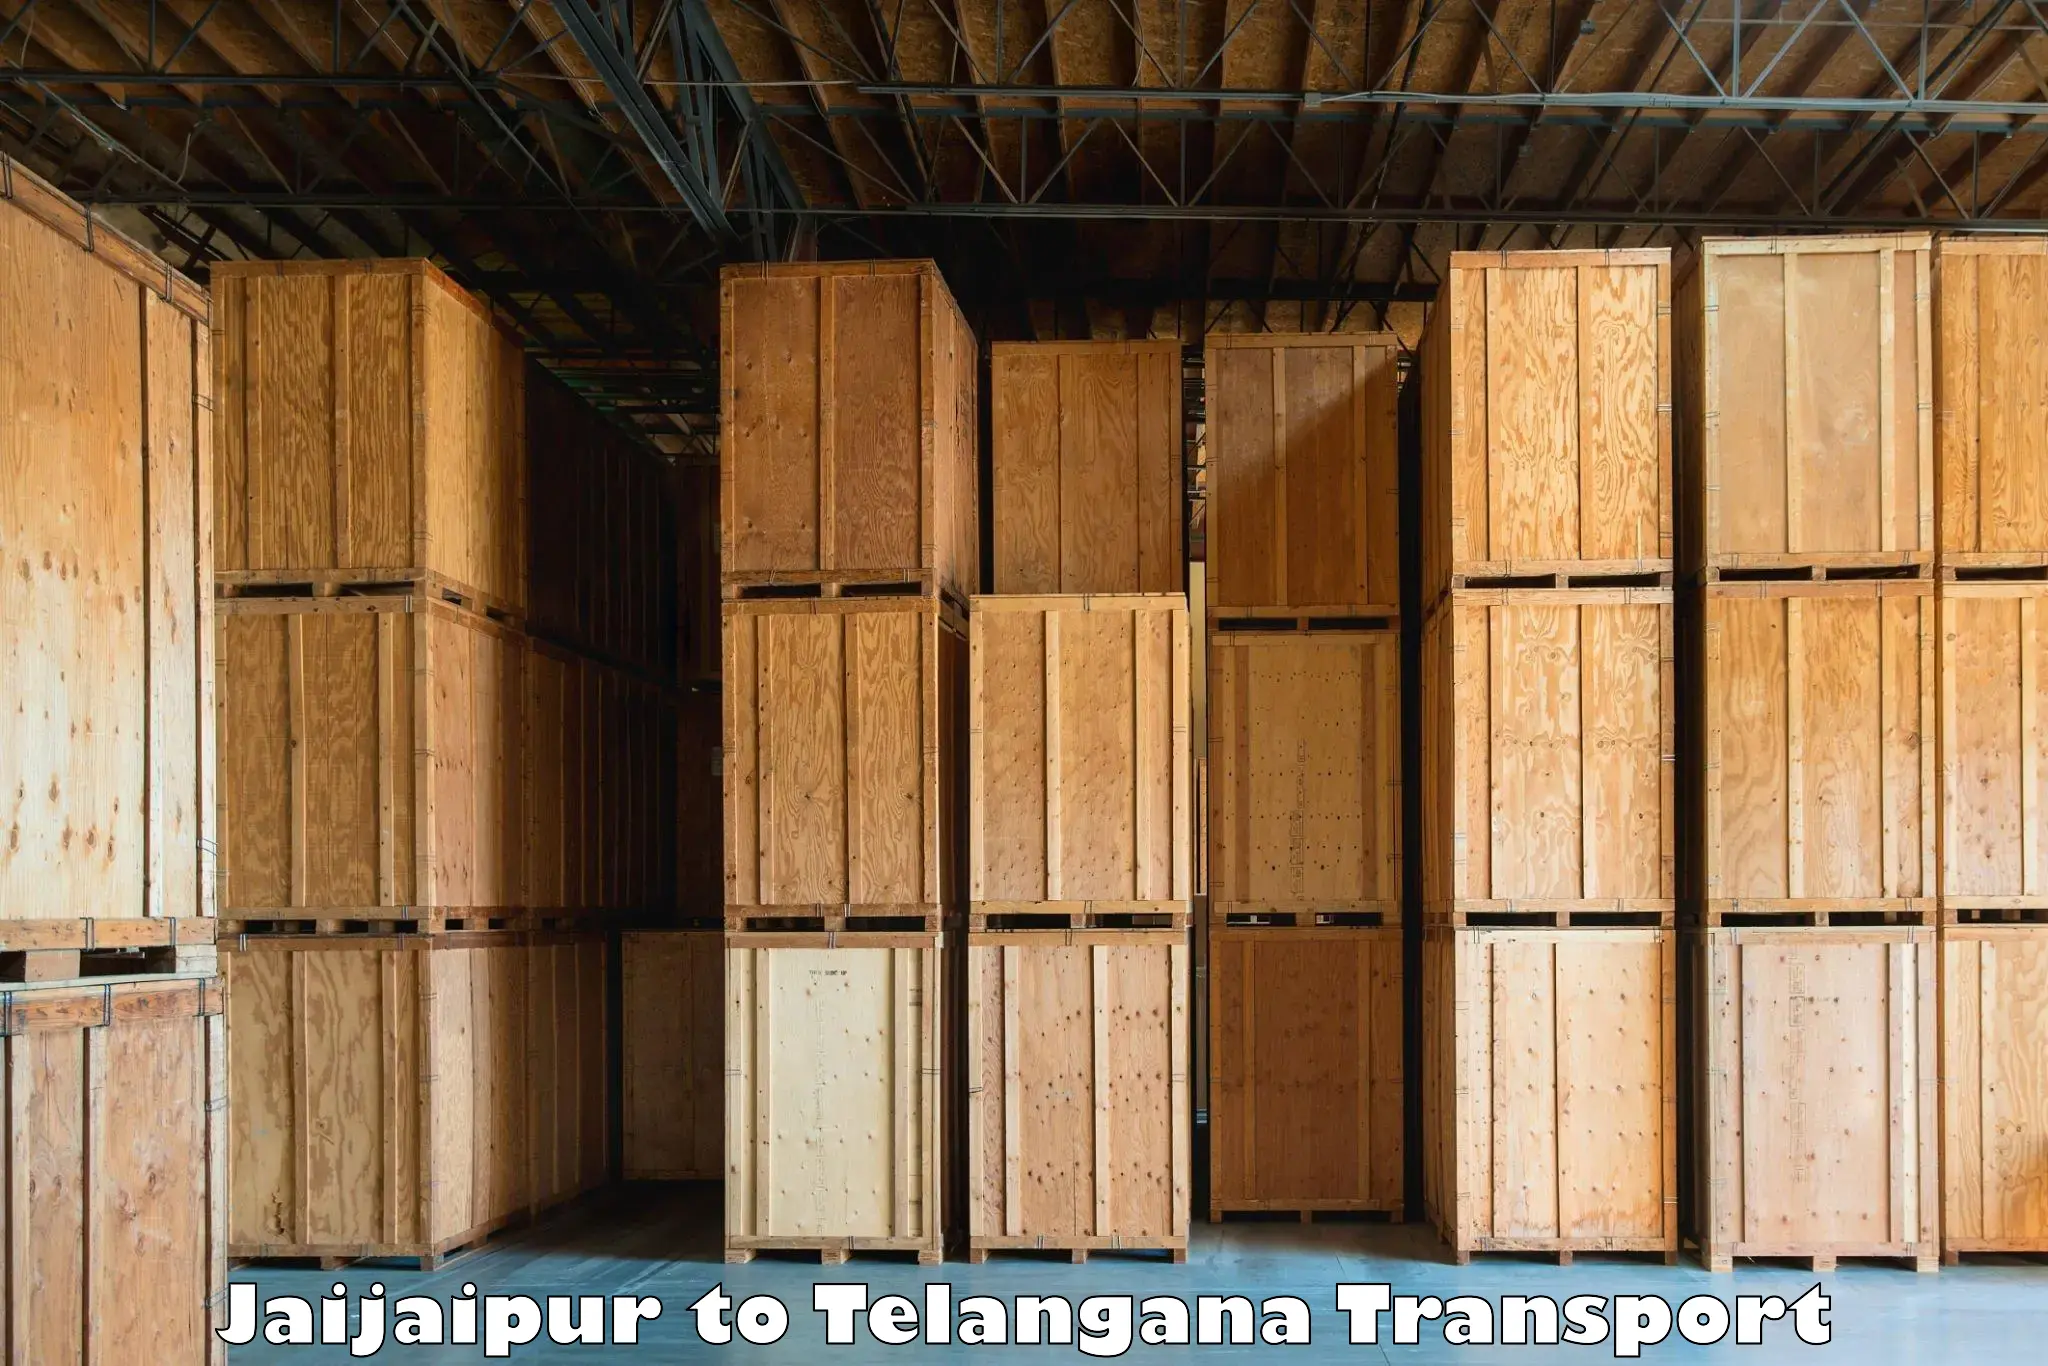 Container transport service Jaijaipur to Balanagar